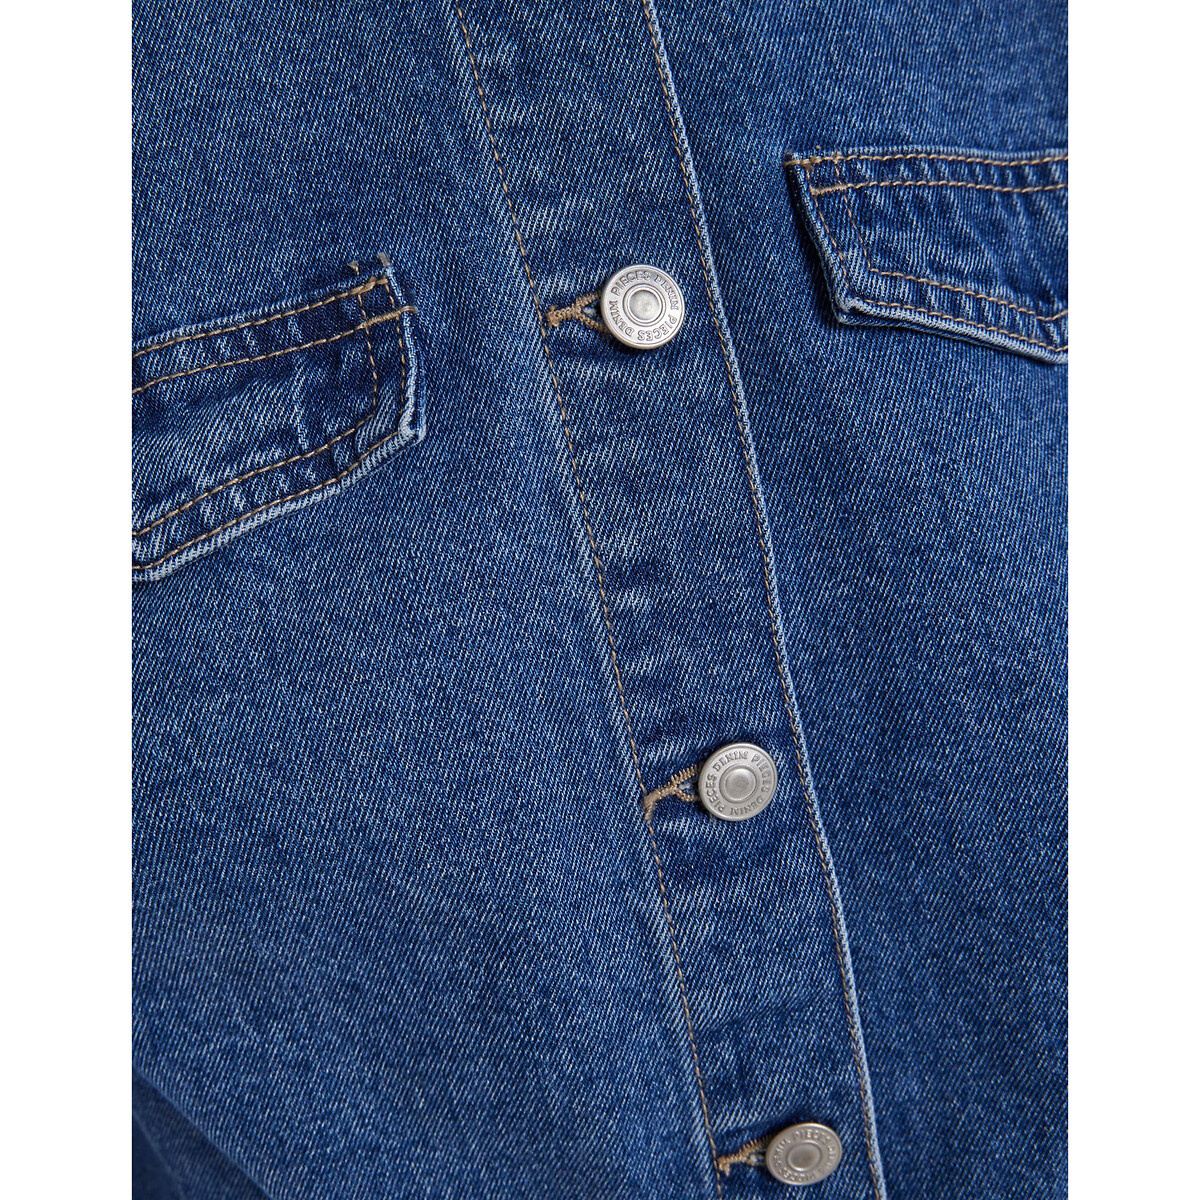 Жакет Короткий из джинсовой ткани XL синий LaRedoute, размер XL - фото 4